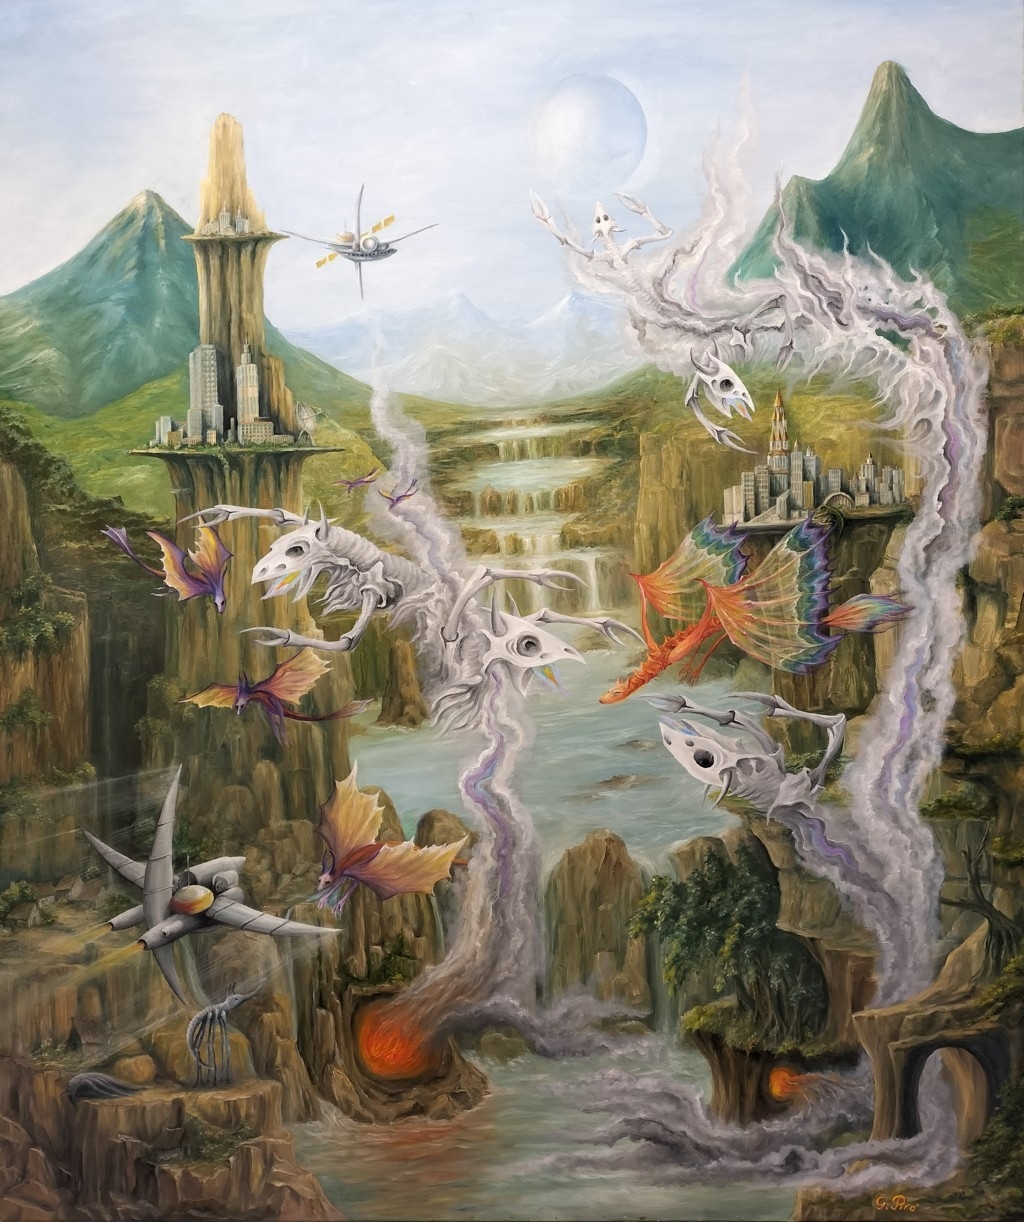 Olieverf op Canvas, Olieverfschilderij, art fantastique avec un motif surréaliste, fantasykunst met een surrealistisch motief, Fantasy-Kunst mit surrealistischem Motiv, Gregory Pyra Piro